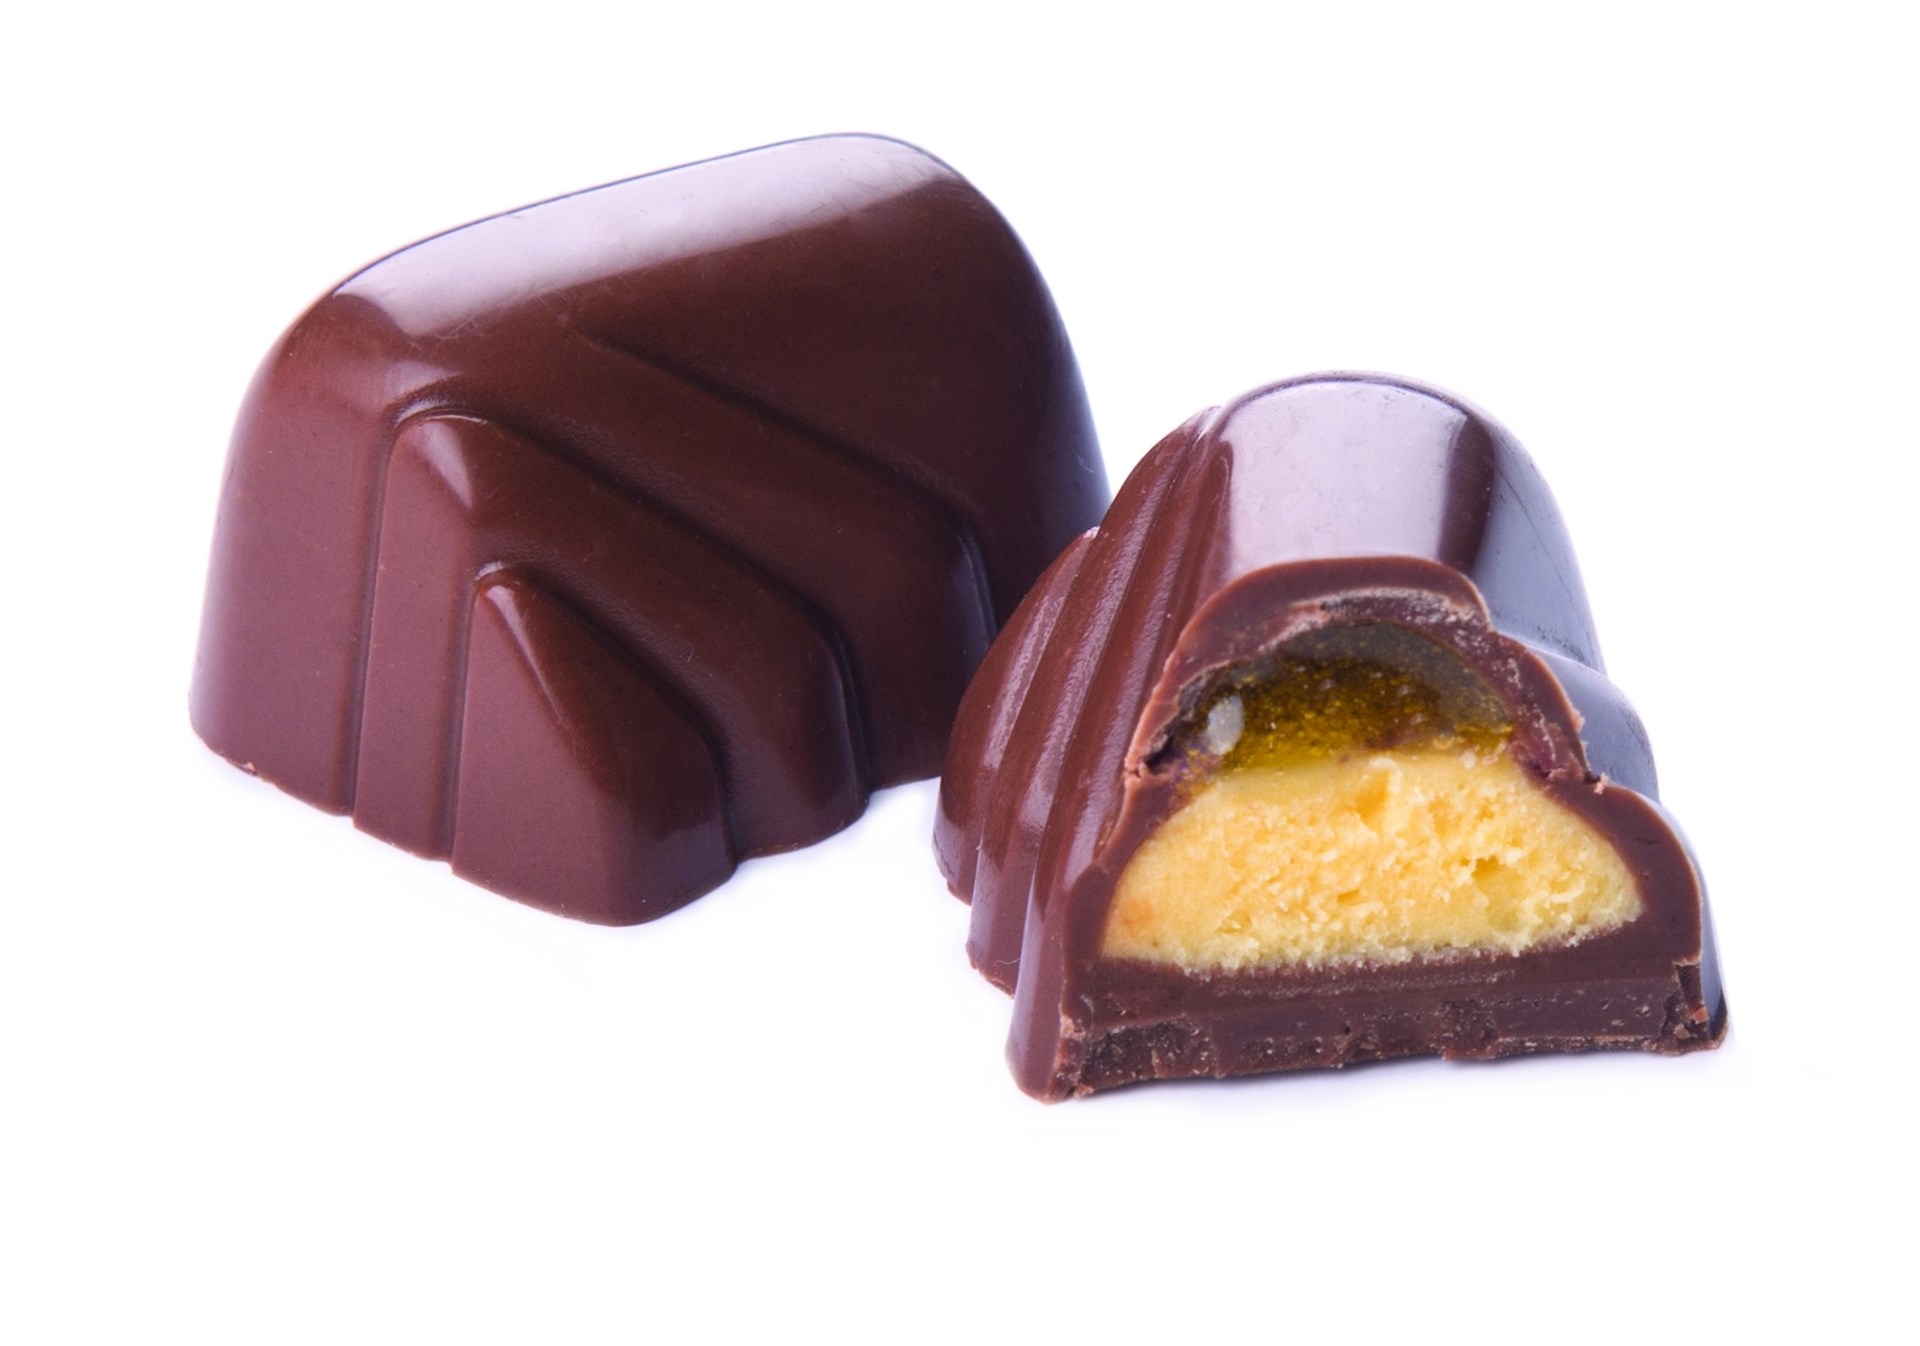 LOUISE-MARIE MILK CHOCOLATE, MANGO AND CORIANDER BY GENAUVA CHOCOLATES